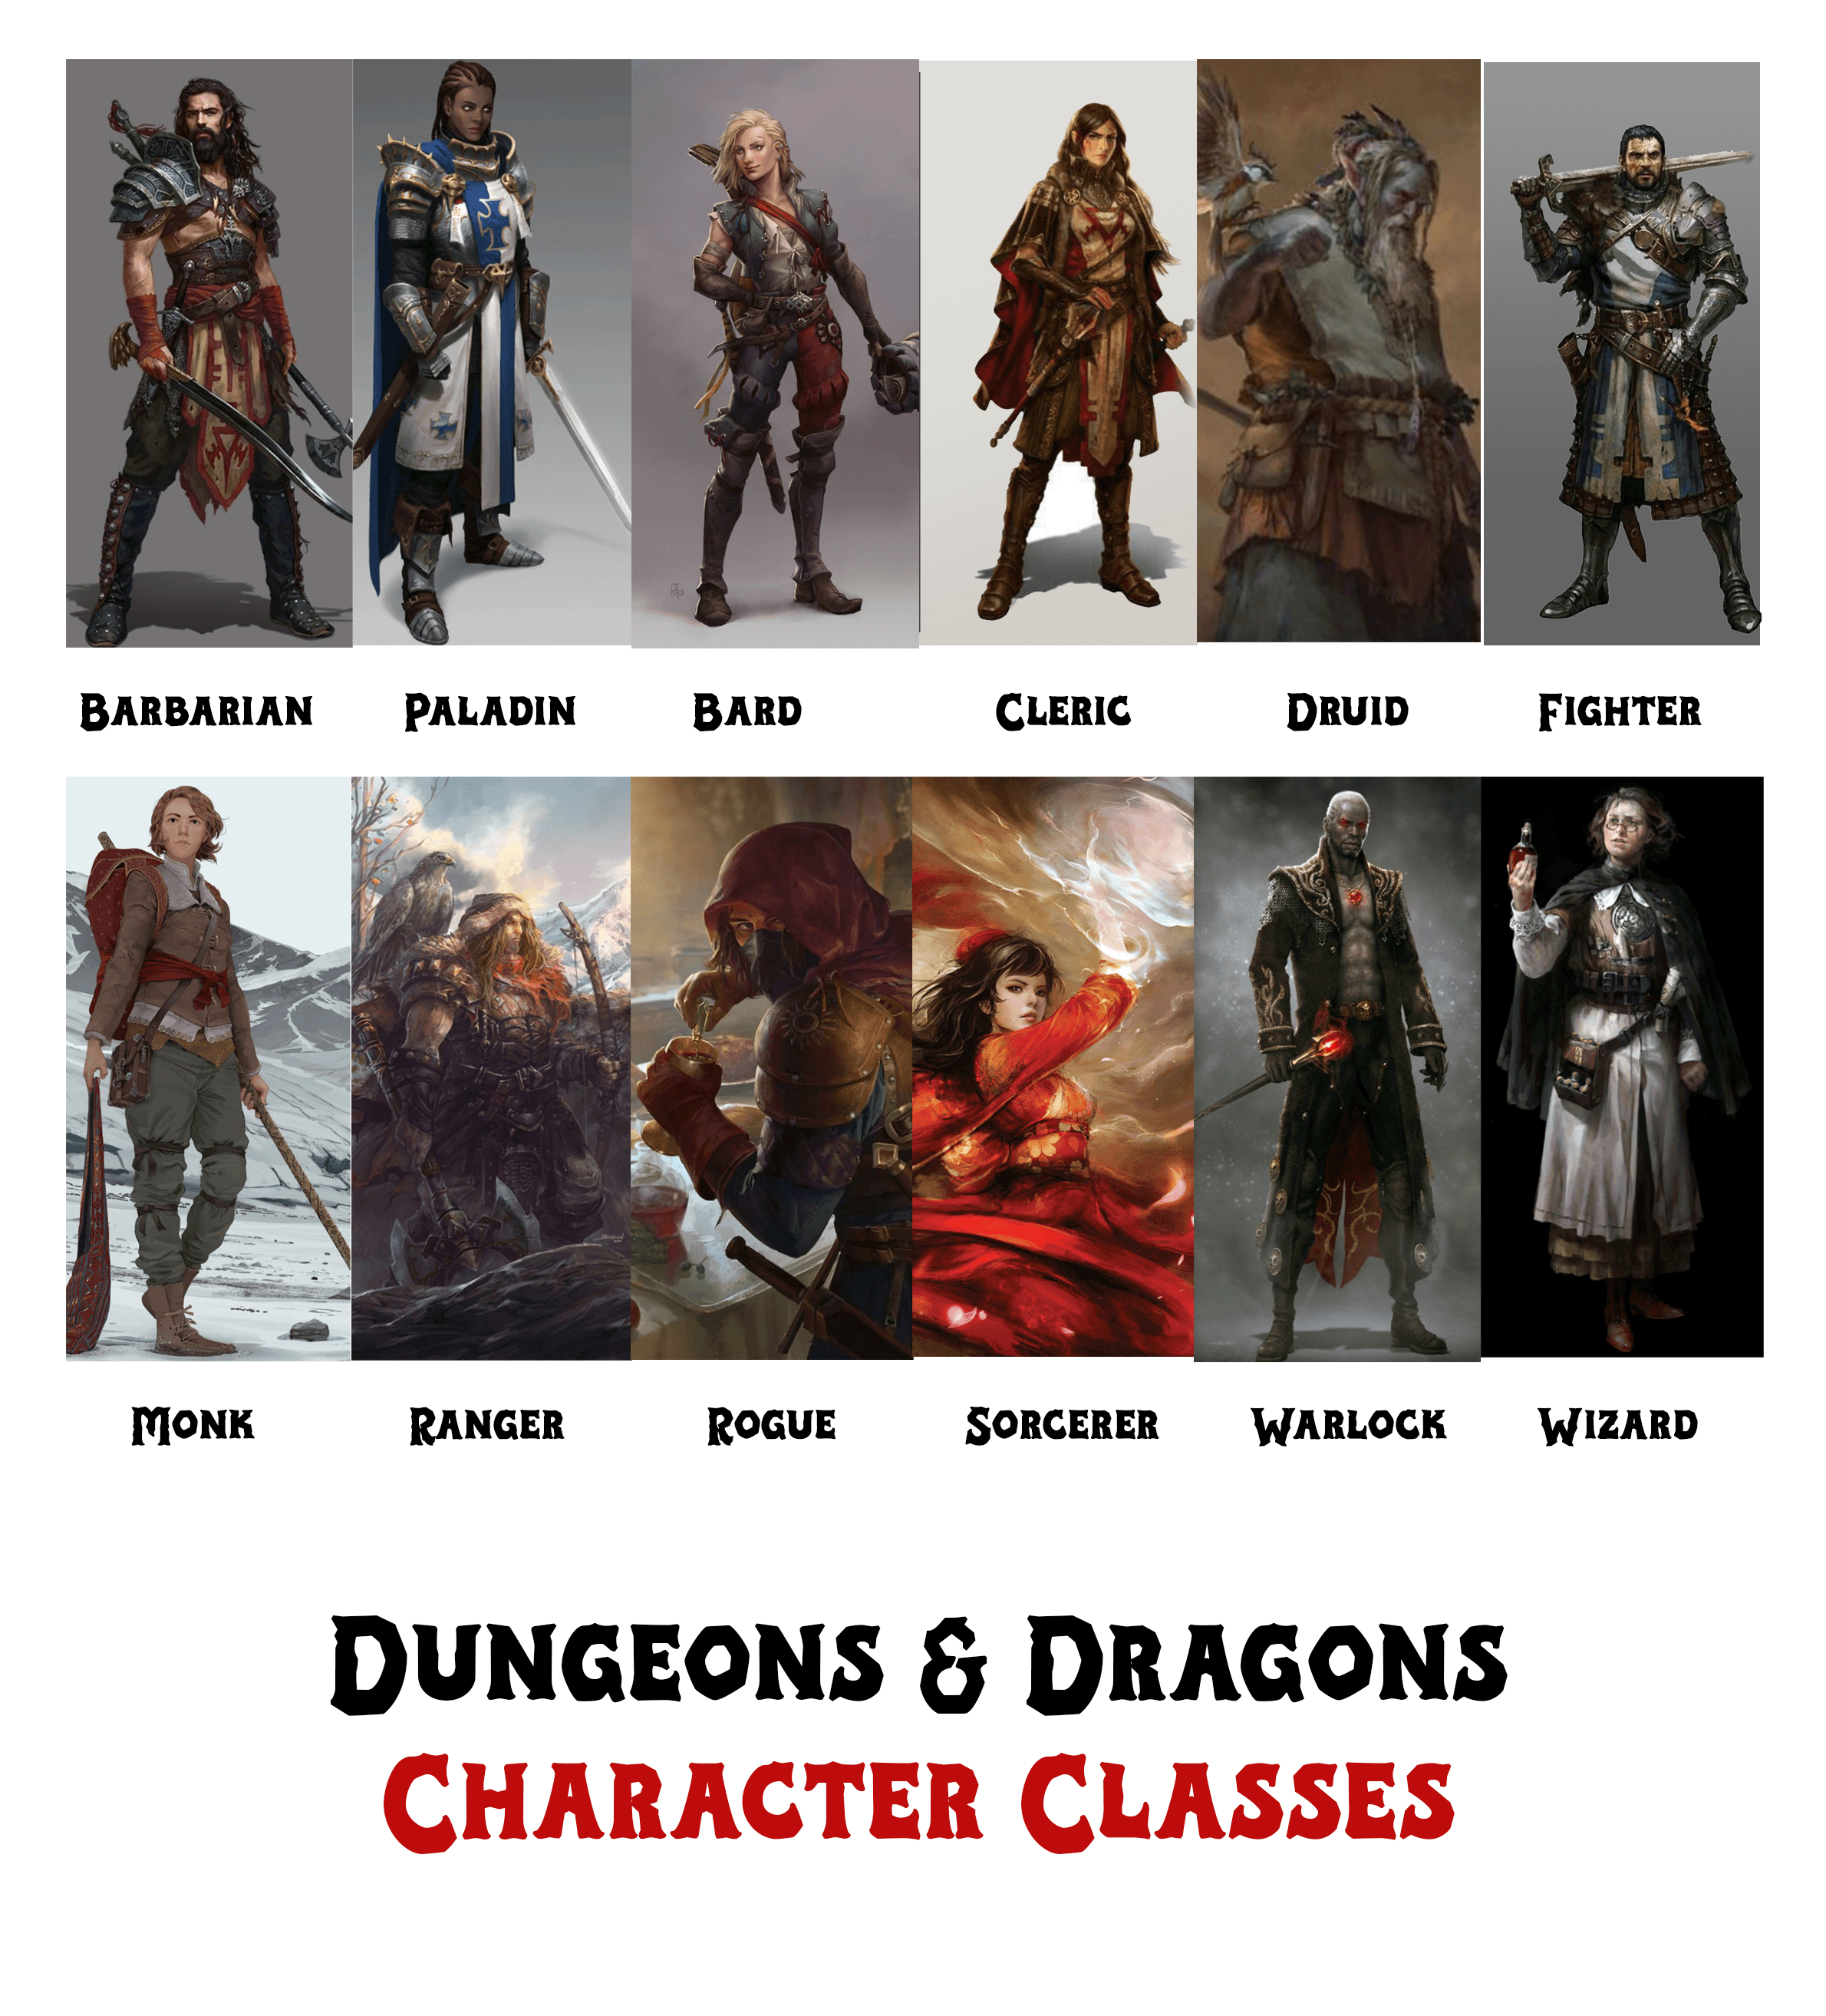 Character Class Descriptions